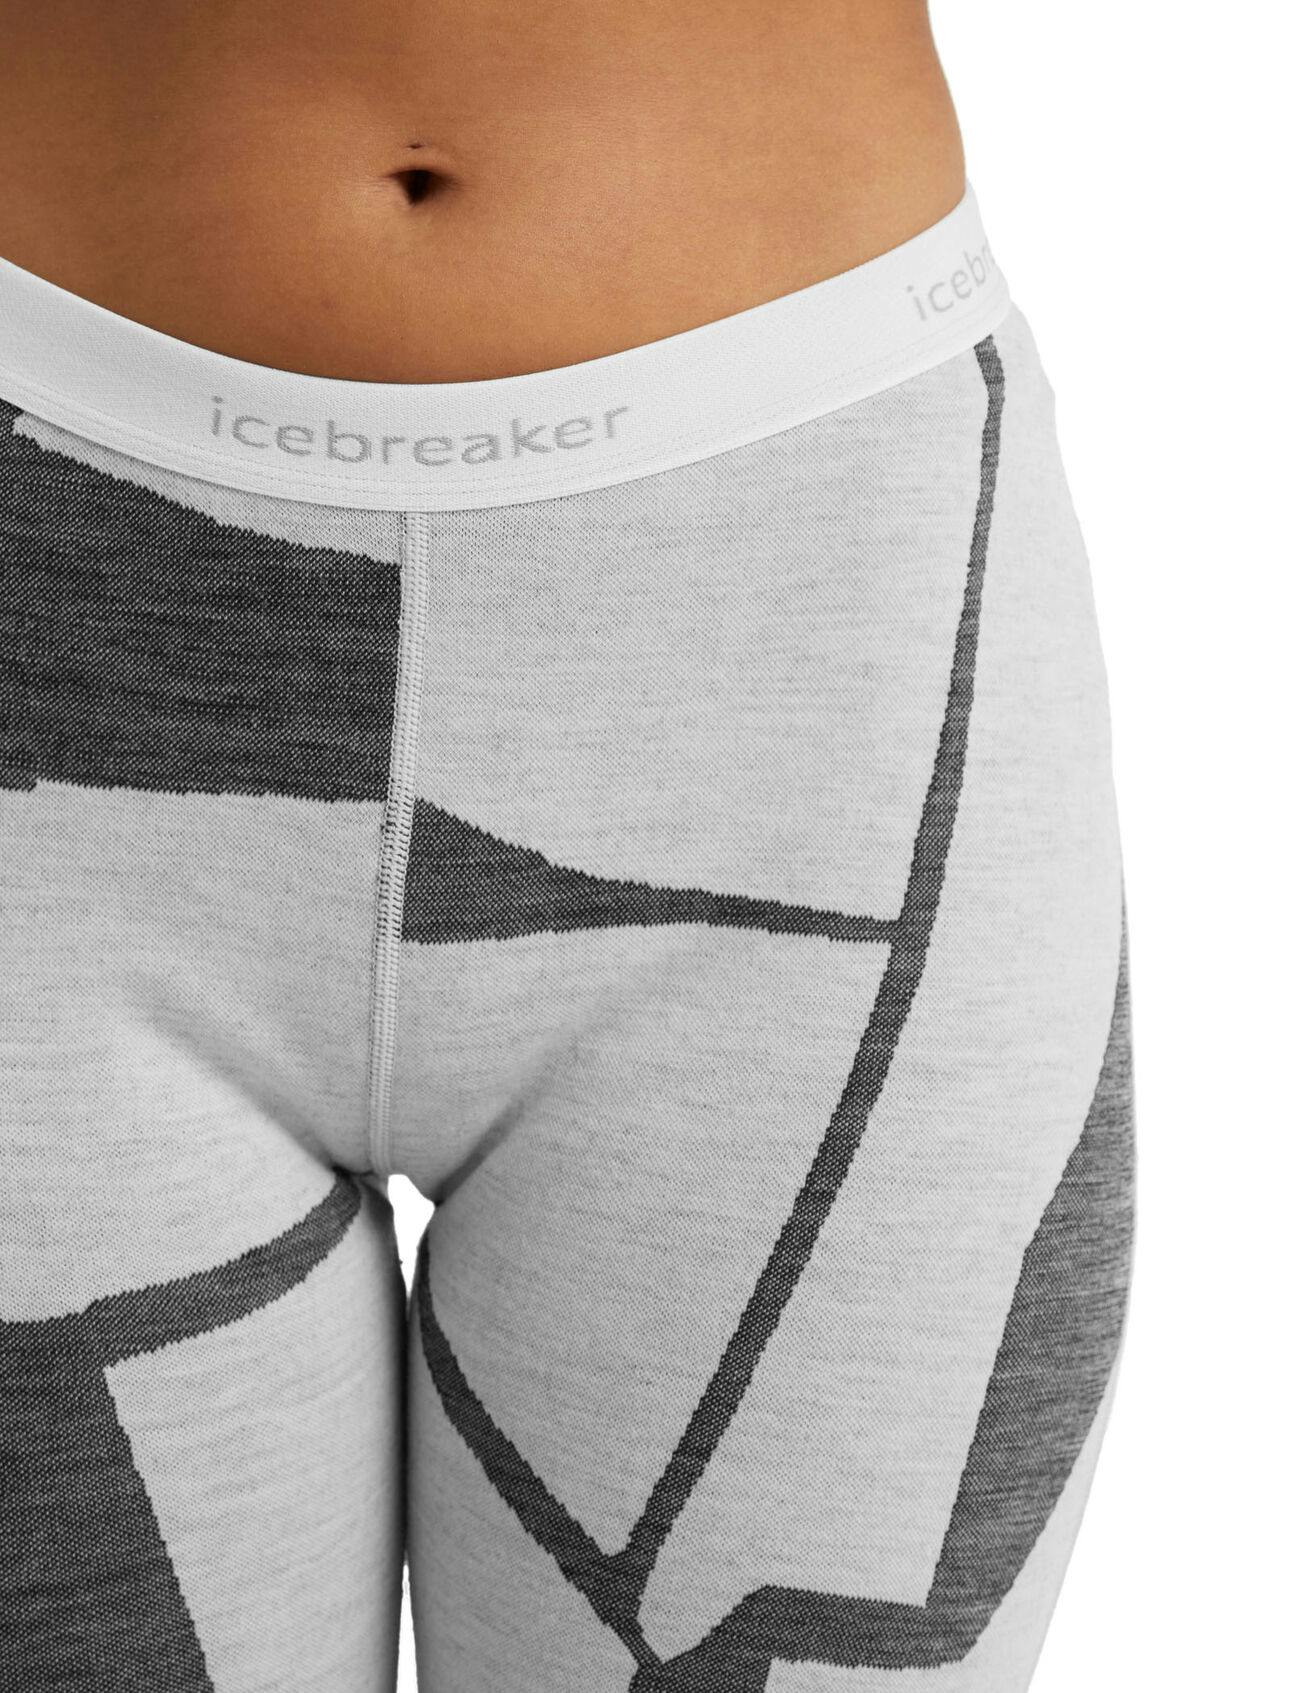 Icebreaker 250 Vertex Leggings Fractured Landscapes Baselayer Pants Grey